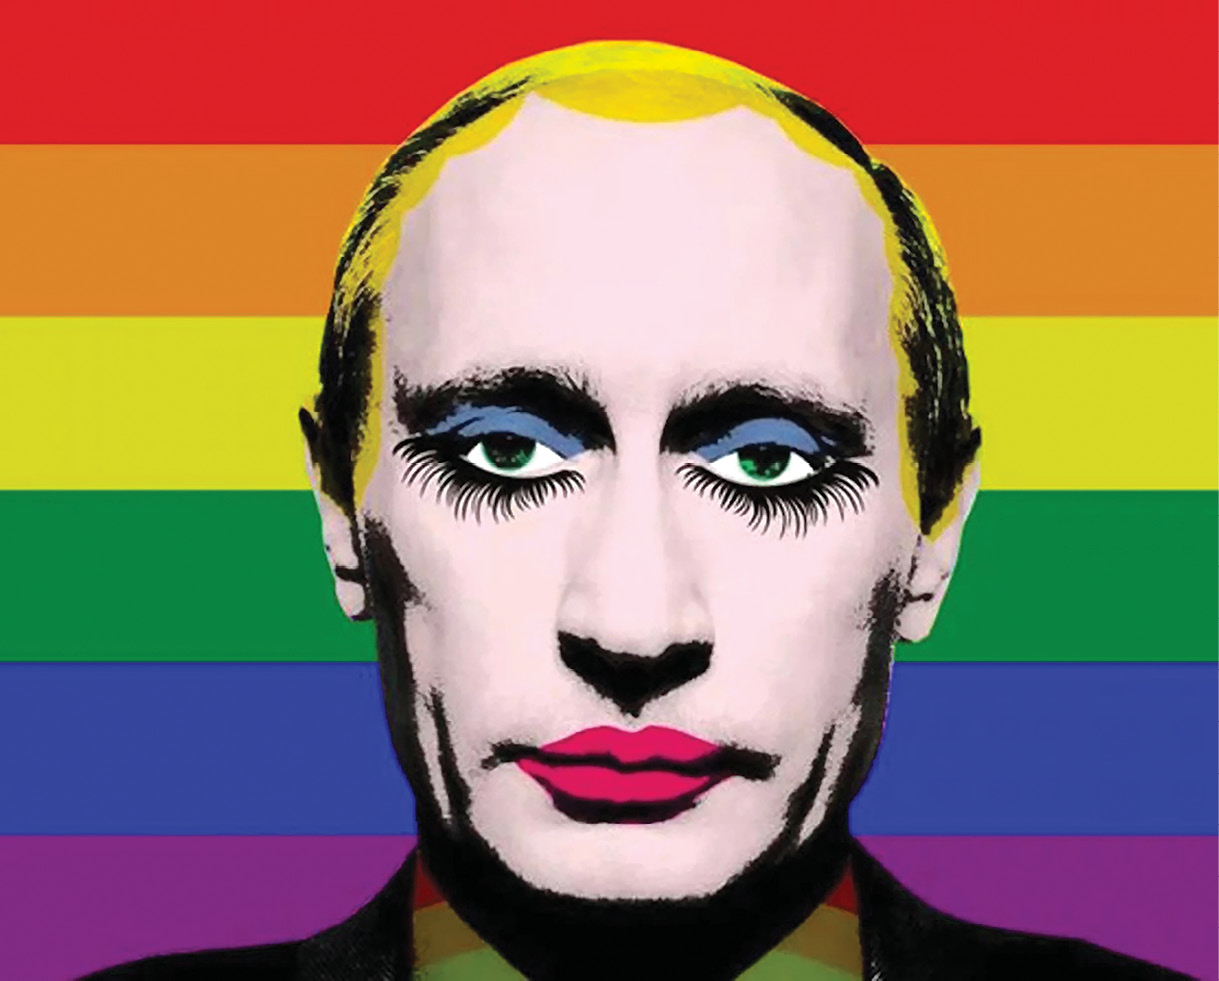 Vladimir Putin prohibió este meme popular de sí mismo con su cara pintada de mujer. La reacción inadvertidamente hizo más popular el meme que nunca, convirtiéndose en una sensación internacional. Según el autor del presente artículo, la ultrasensibilidad de Putin lo hace un blanco vulnerable para el ridículo. (Artista desconocido)